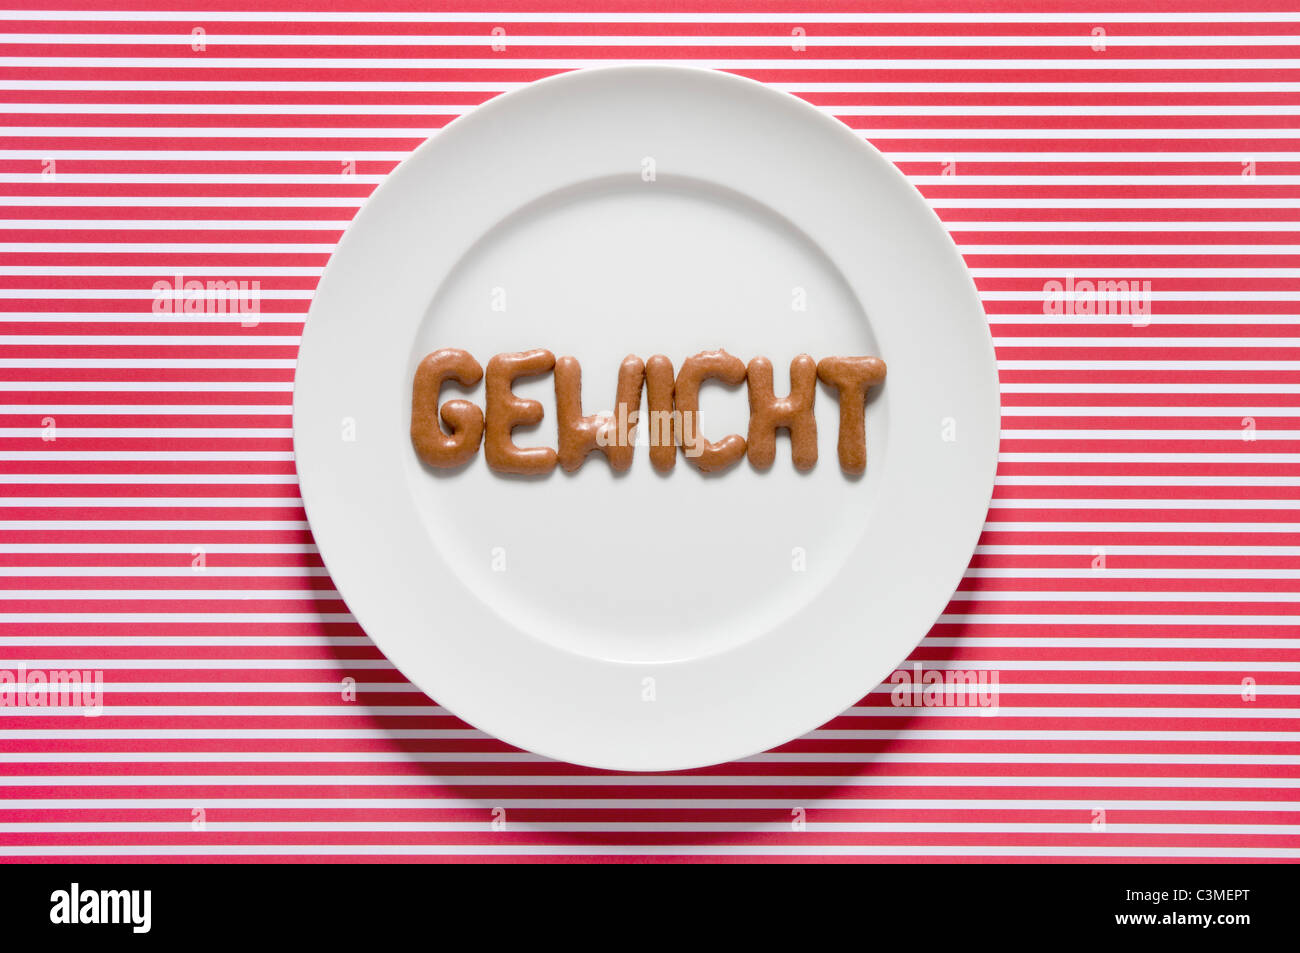 Gewicht mit Russisch Brot auf Teller geschrieben Wort, Nahaufnahme Stockfoto